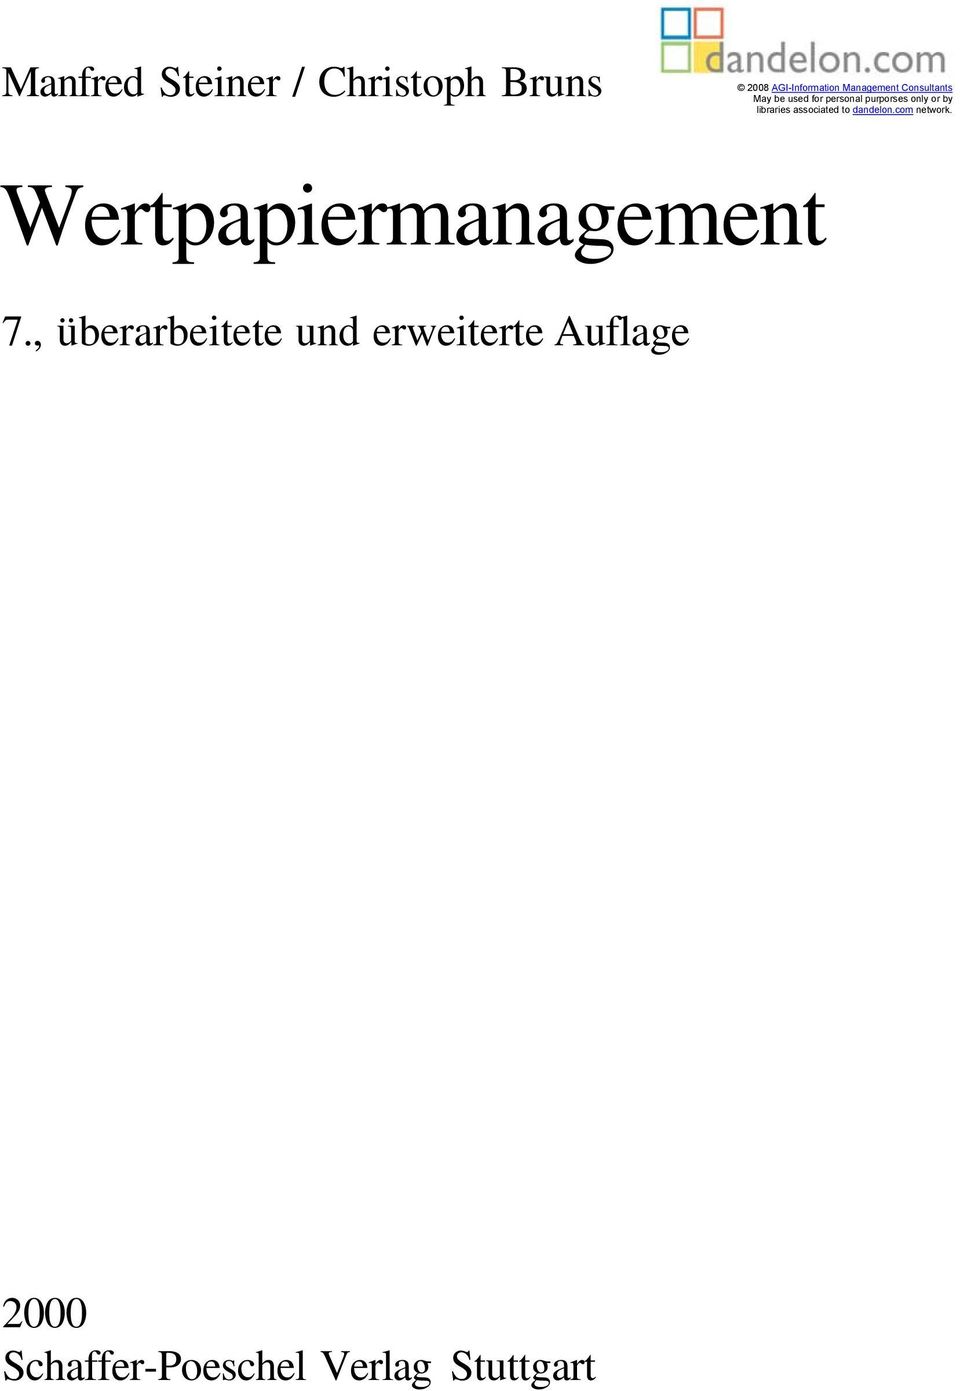 associated to dandelon.com network. Wertpapiermanagement 7.